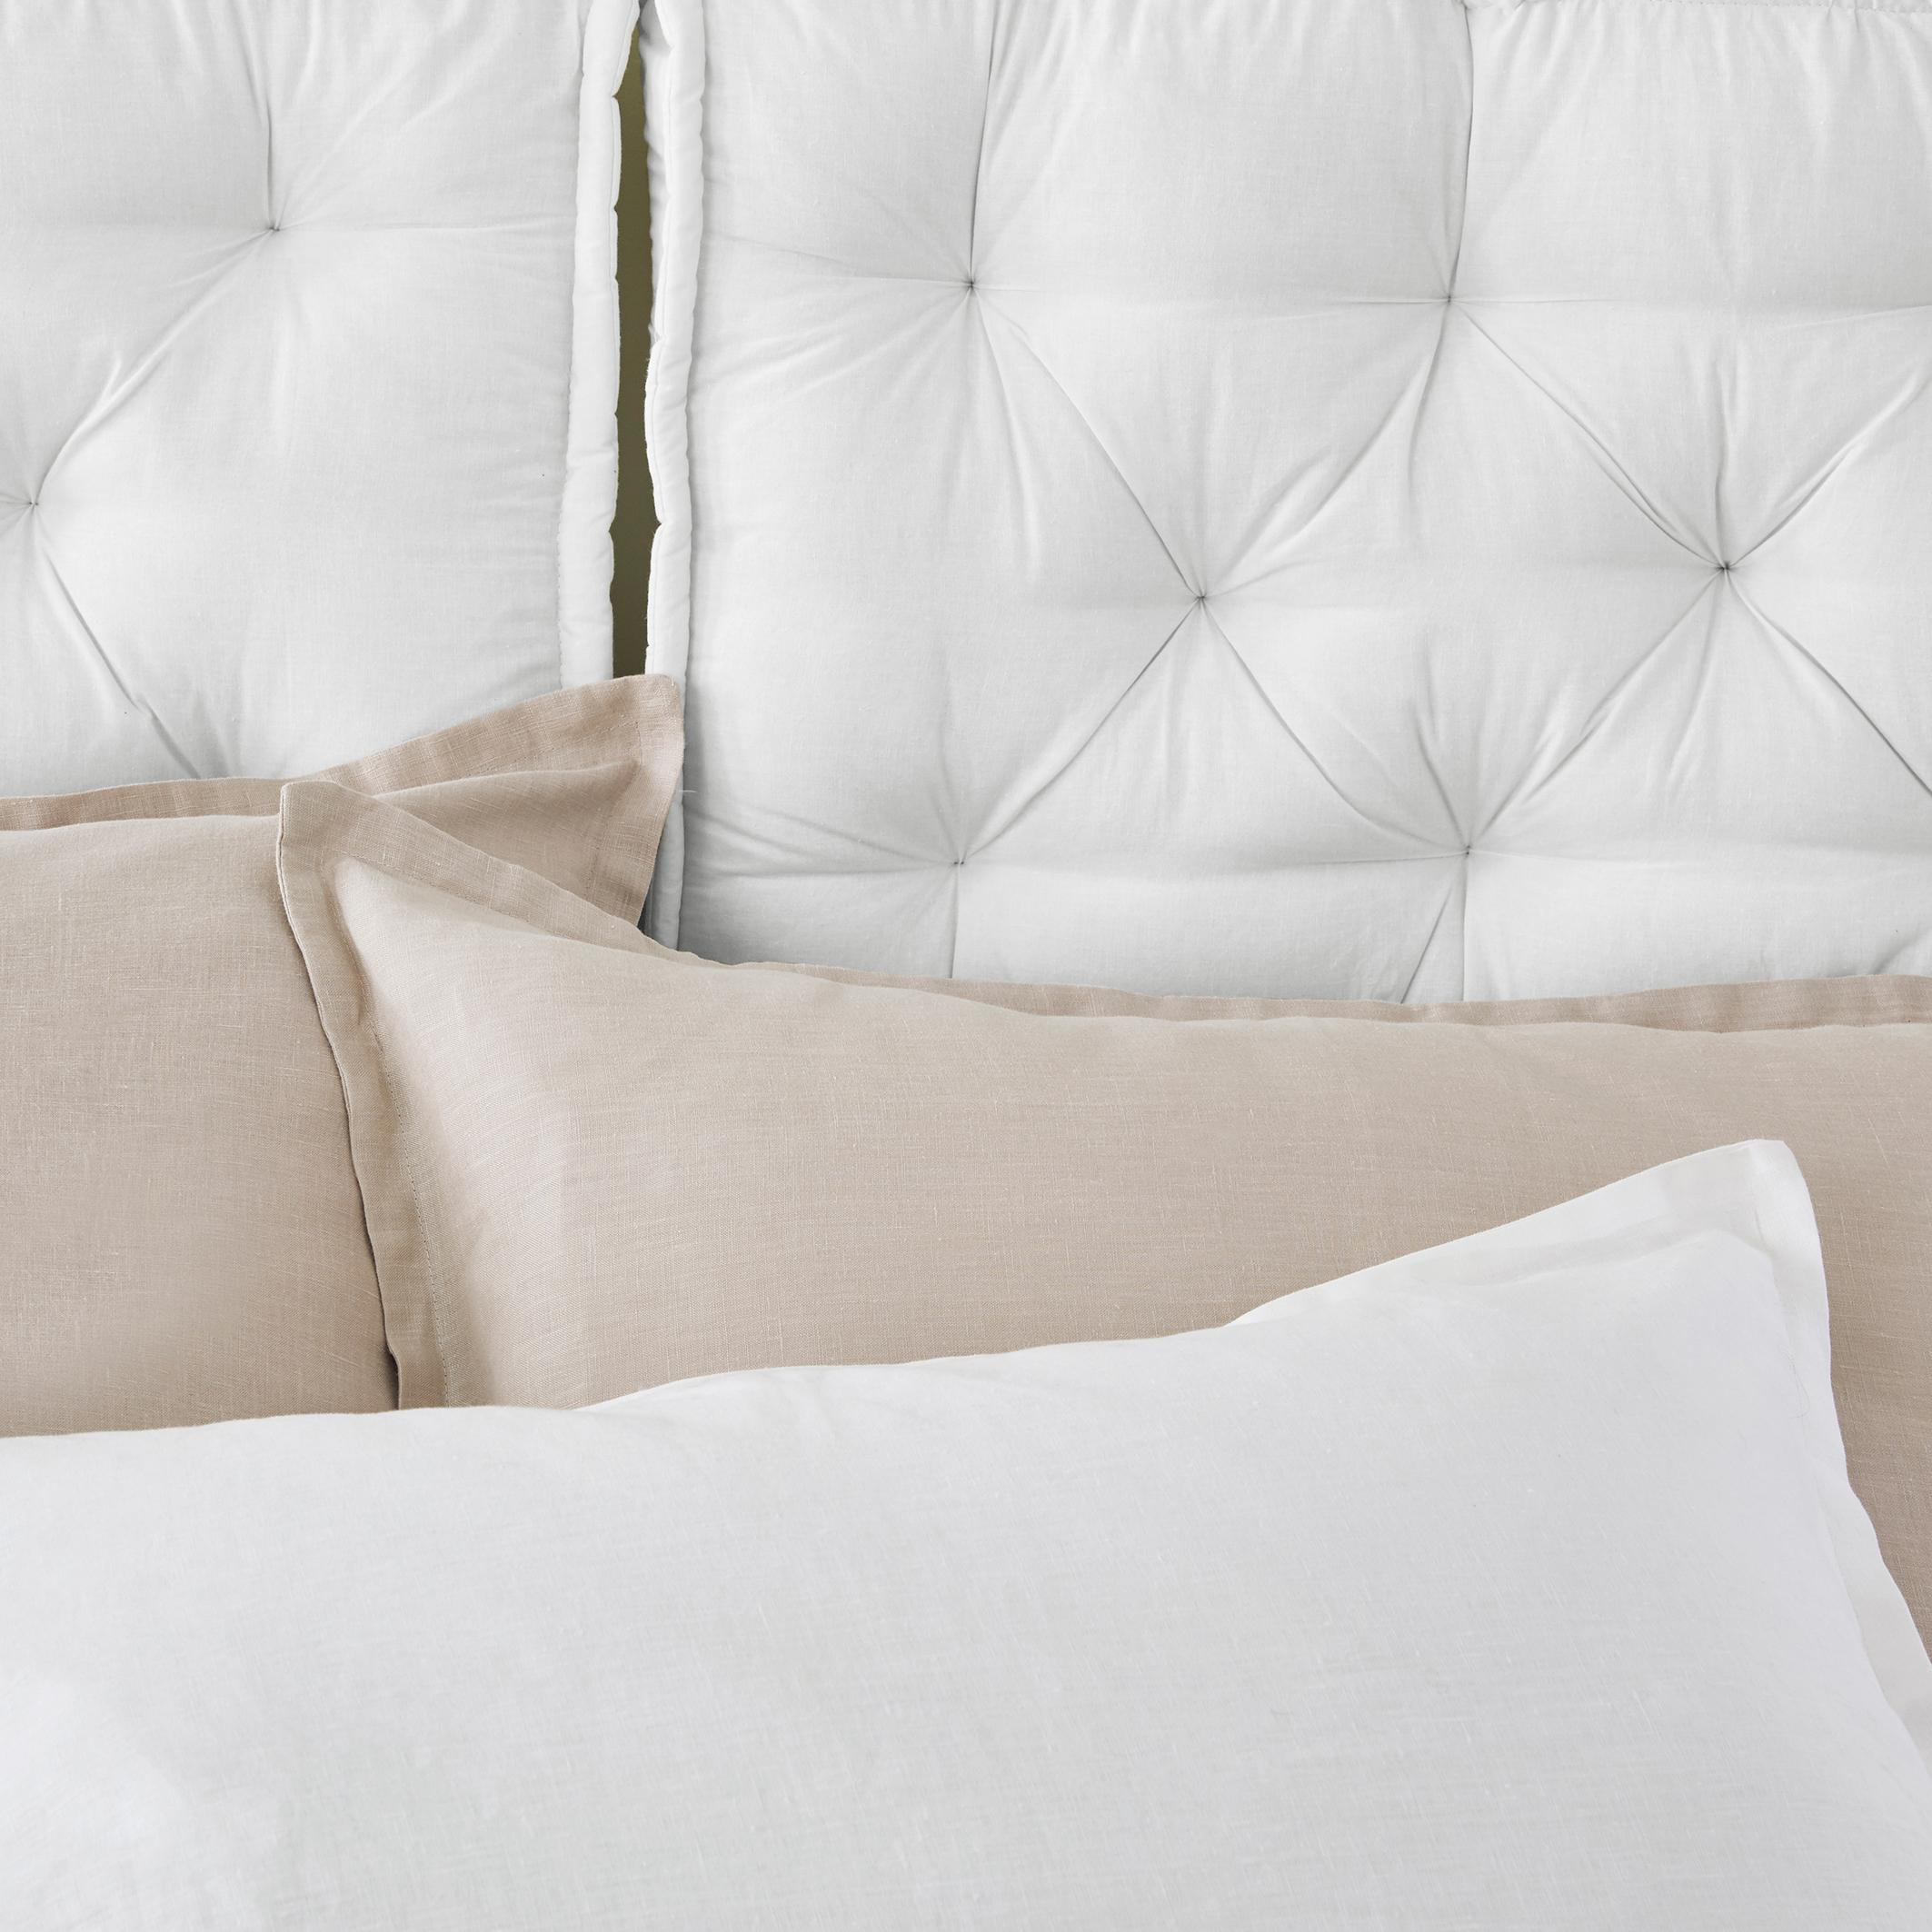 RUYII Large Cotton Cushion Bed Large Pillow Headboard Cushions Sofa Throw  Pillow,WhiteA-140x50x14cm